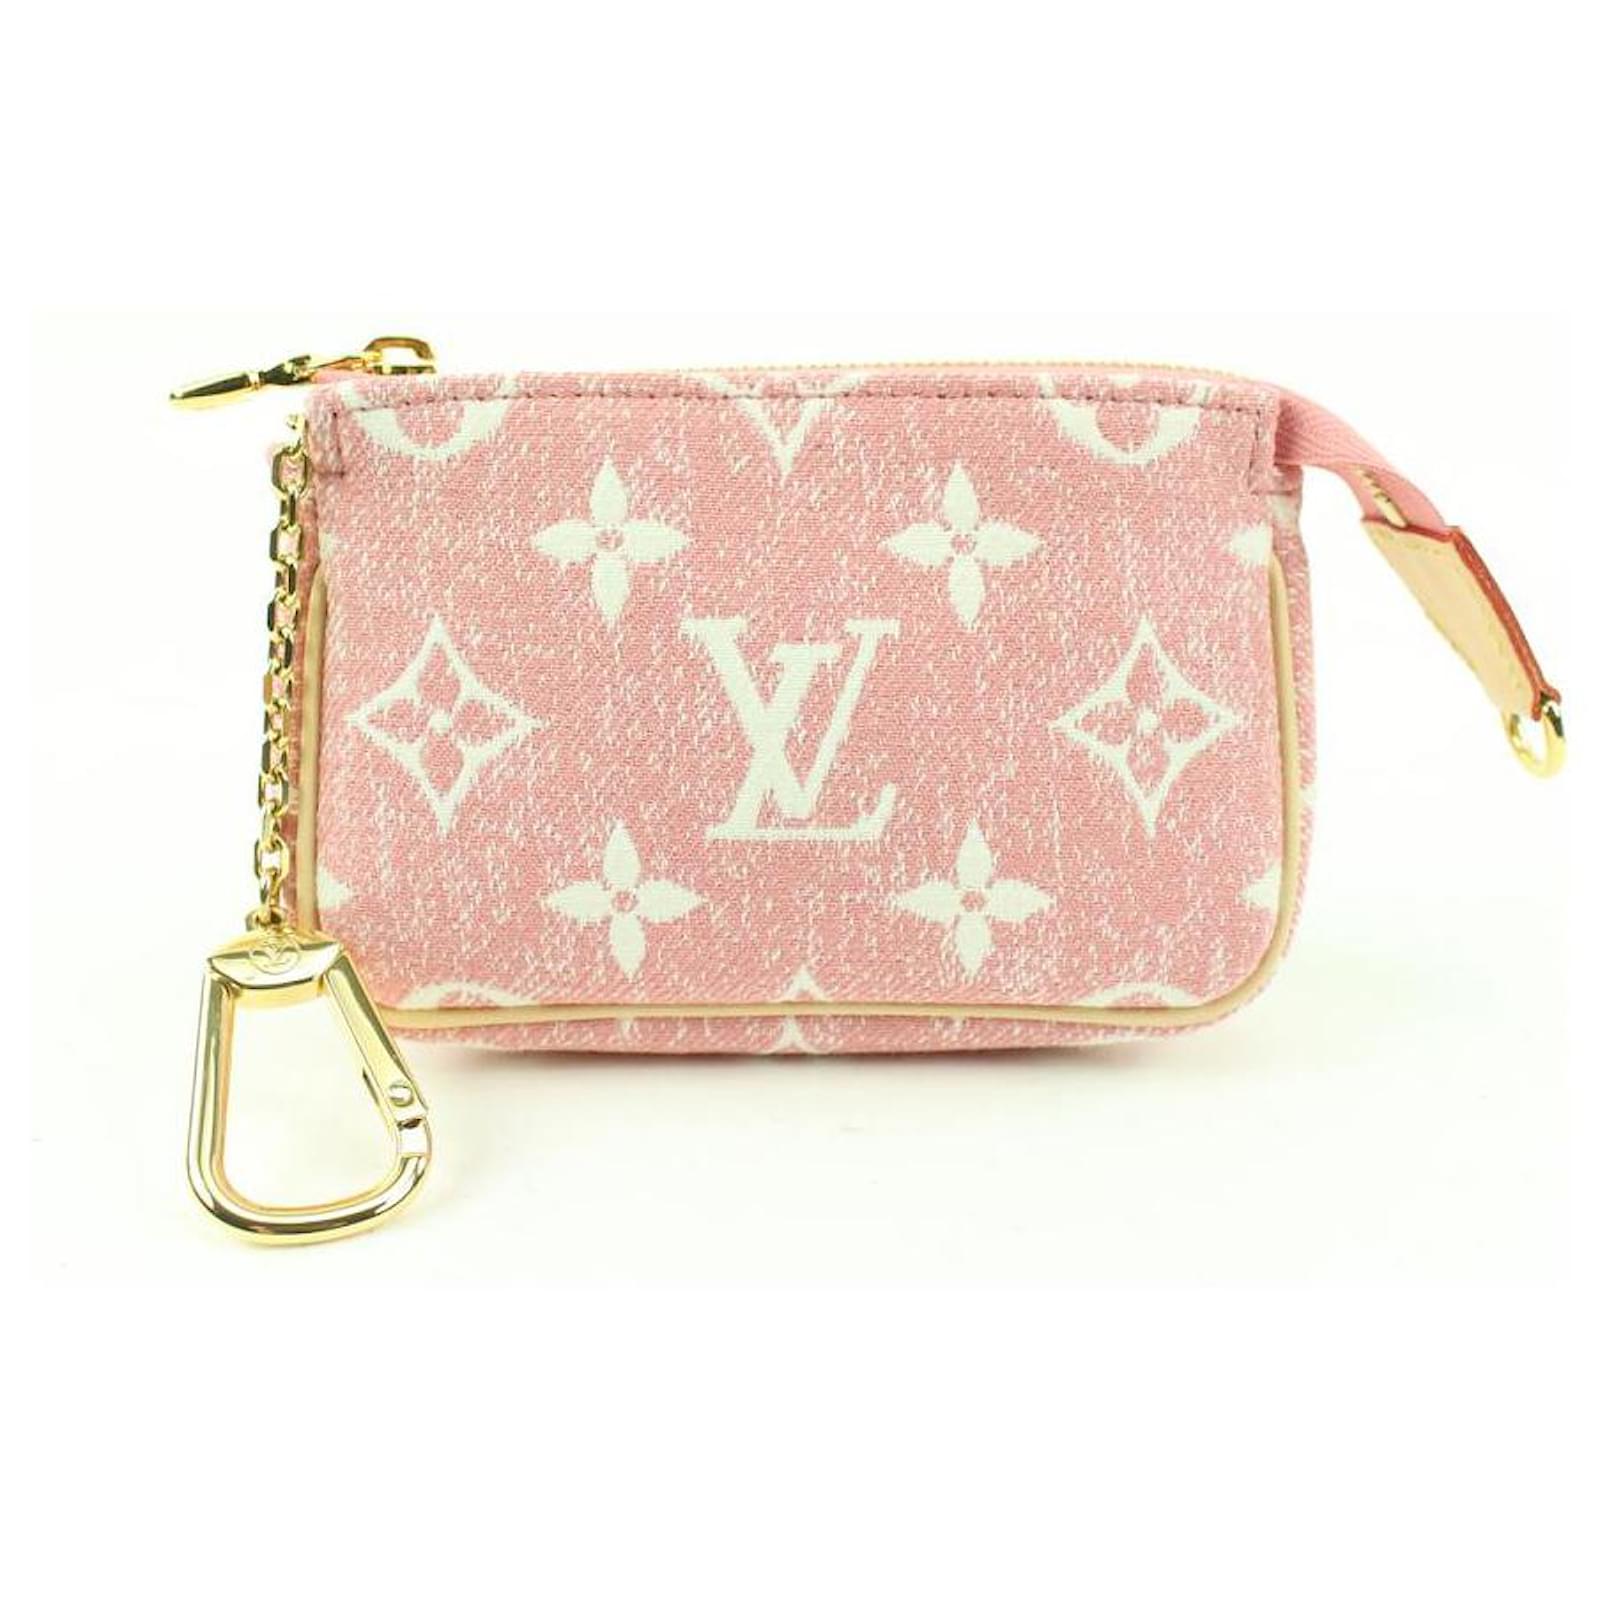 Light pink LV key pouch  Lv key pouch, Key pouch, Pouch